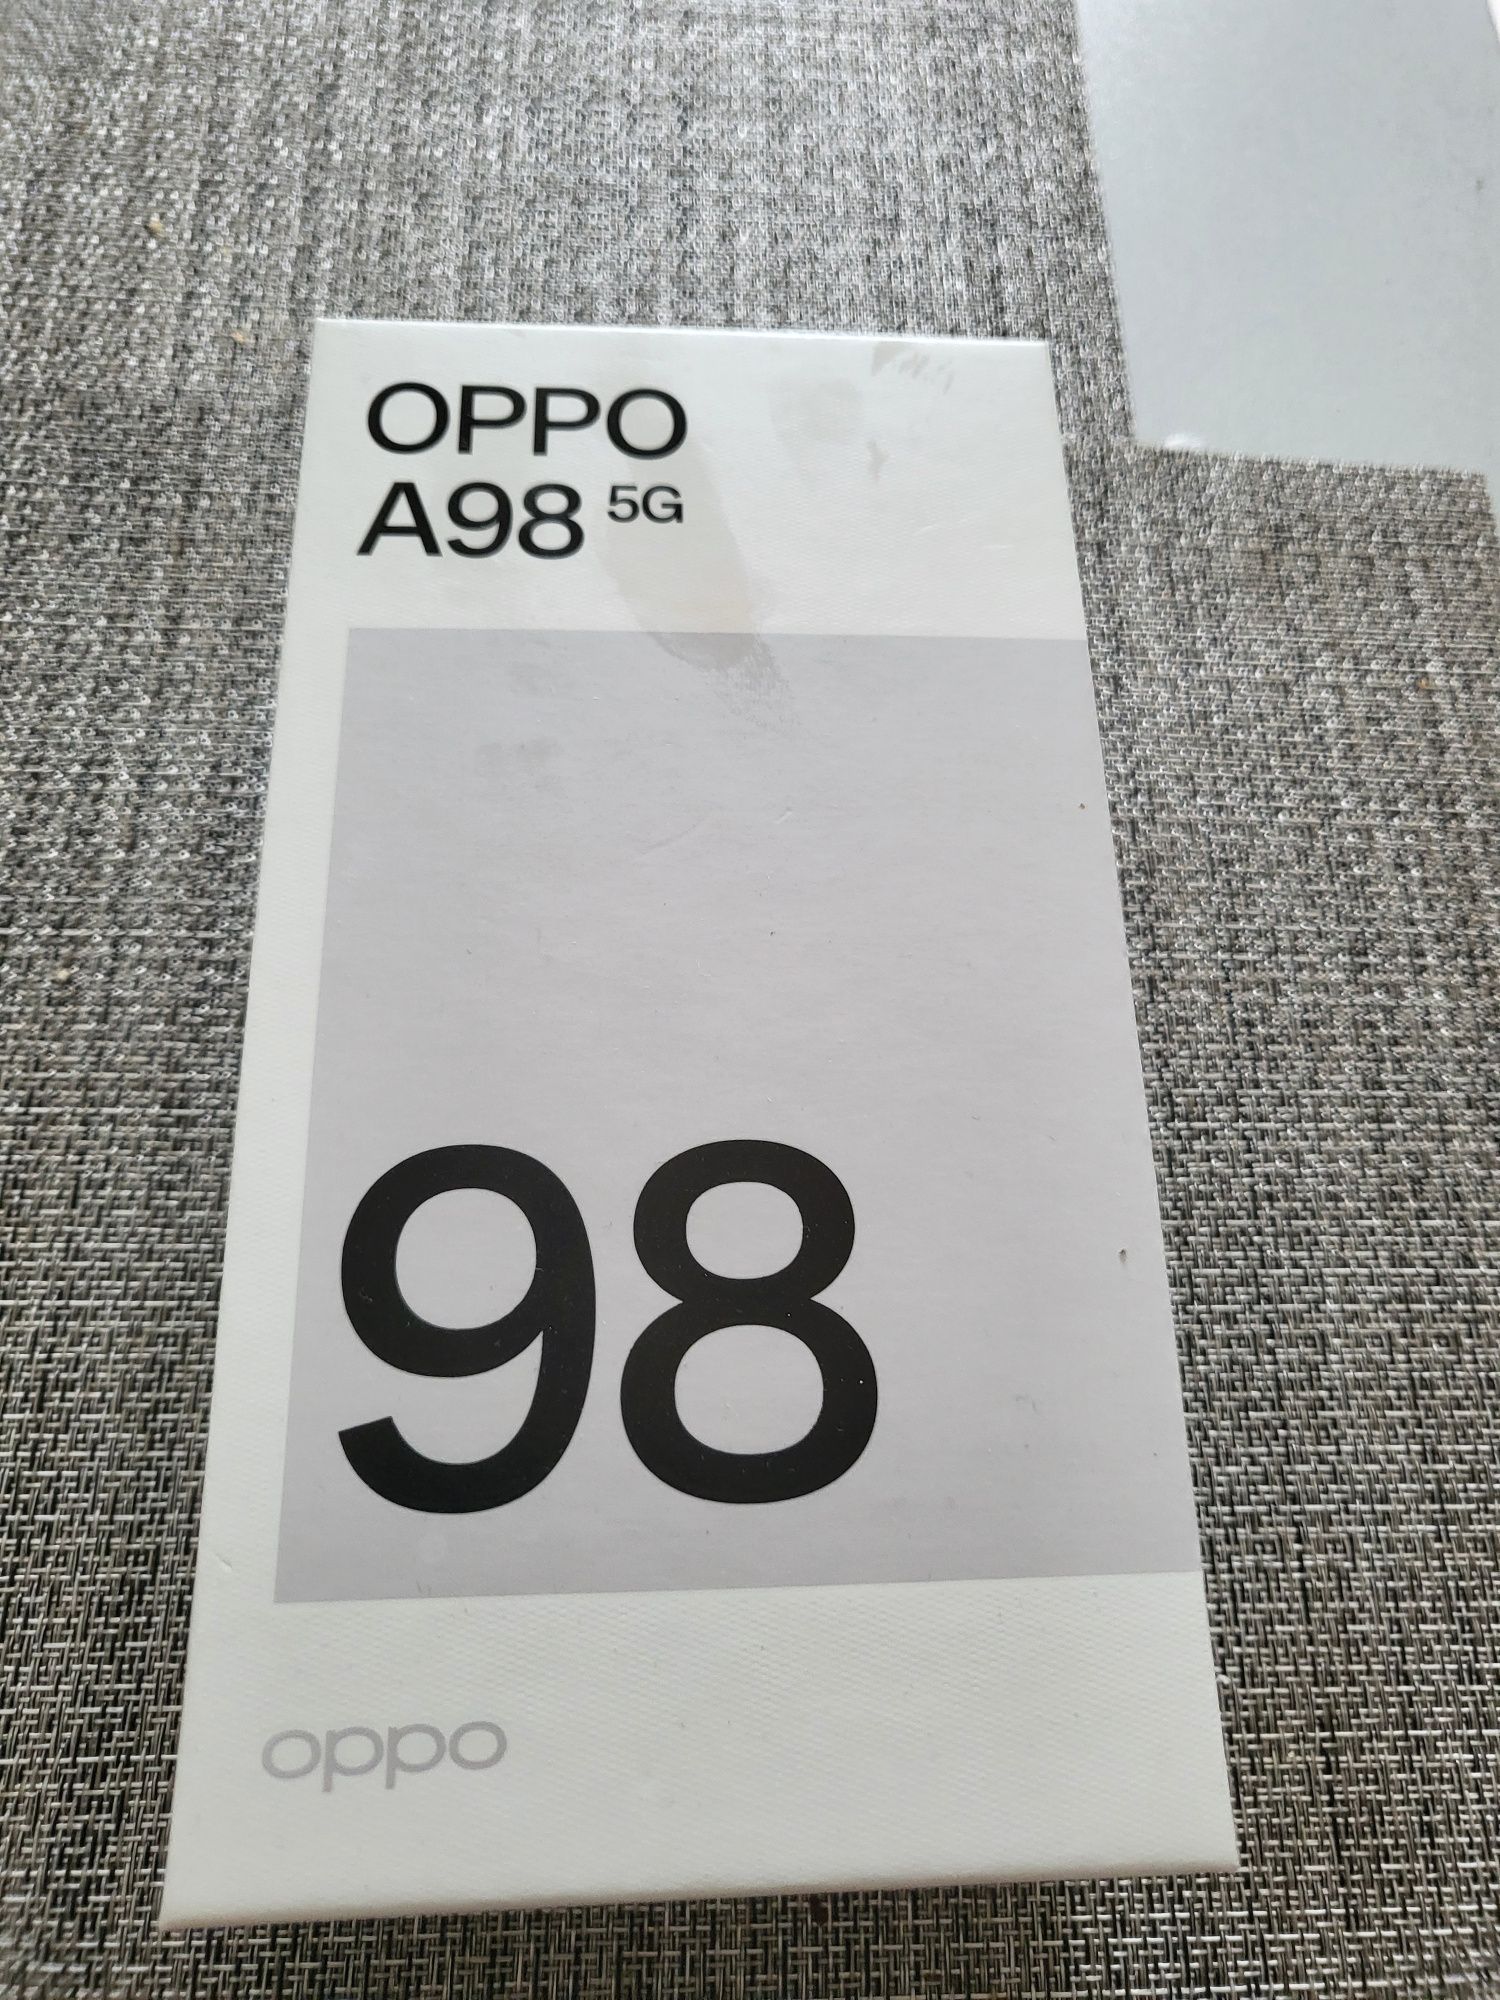 Vând telefon Oppo A98 5g